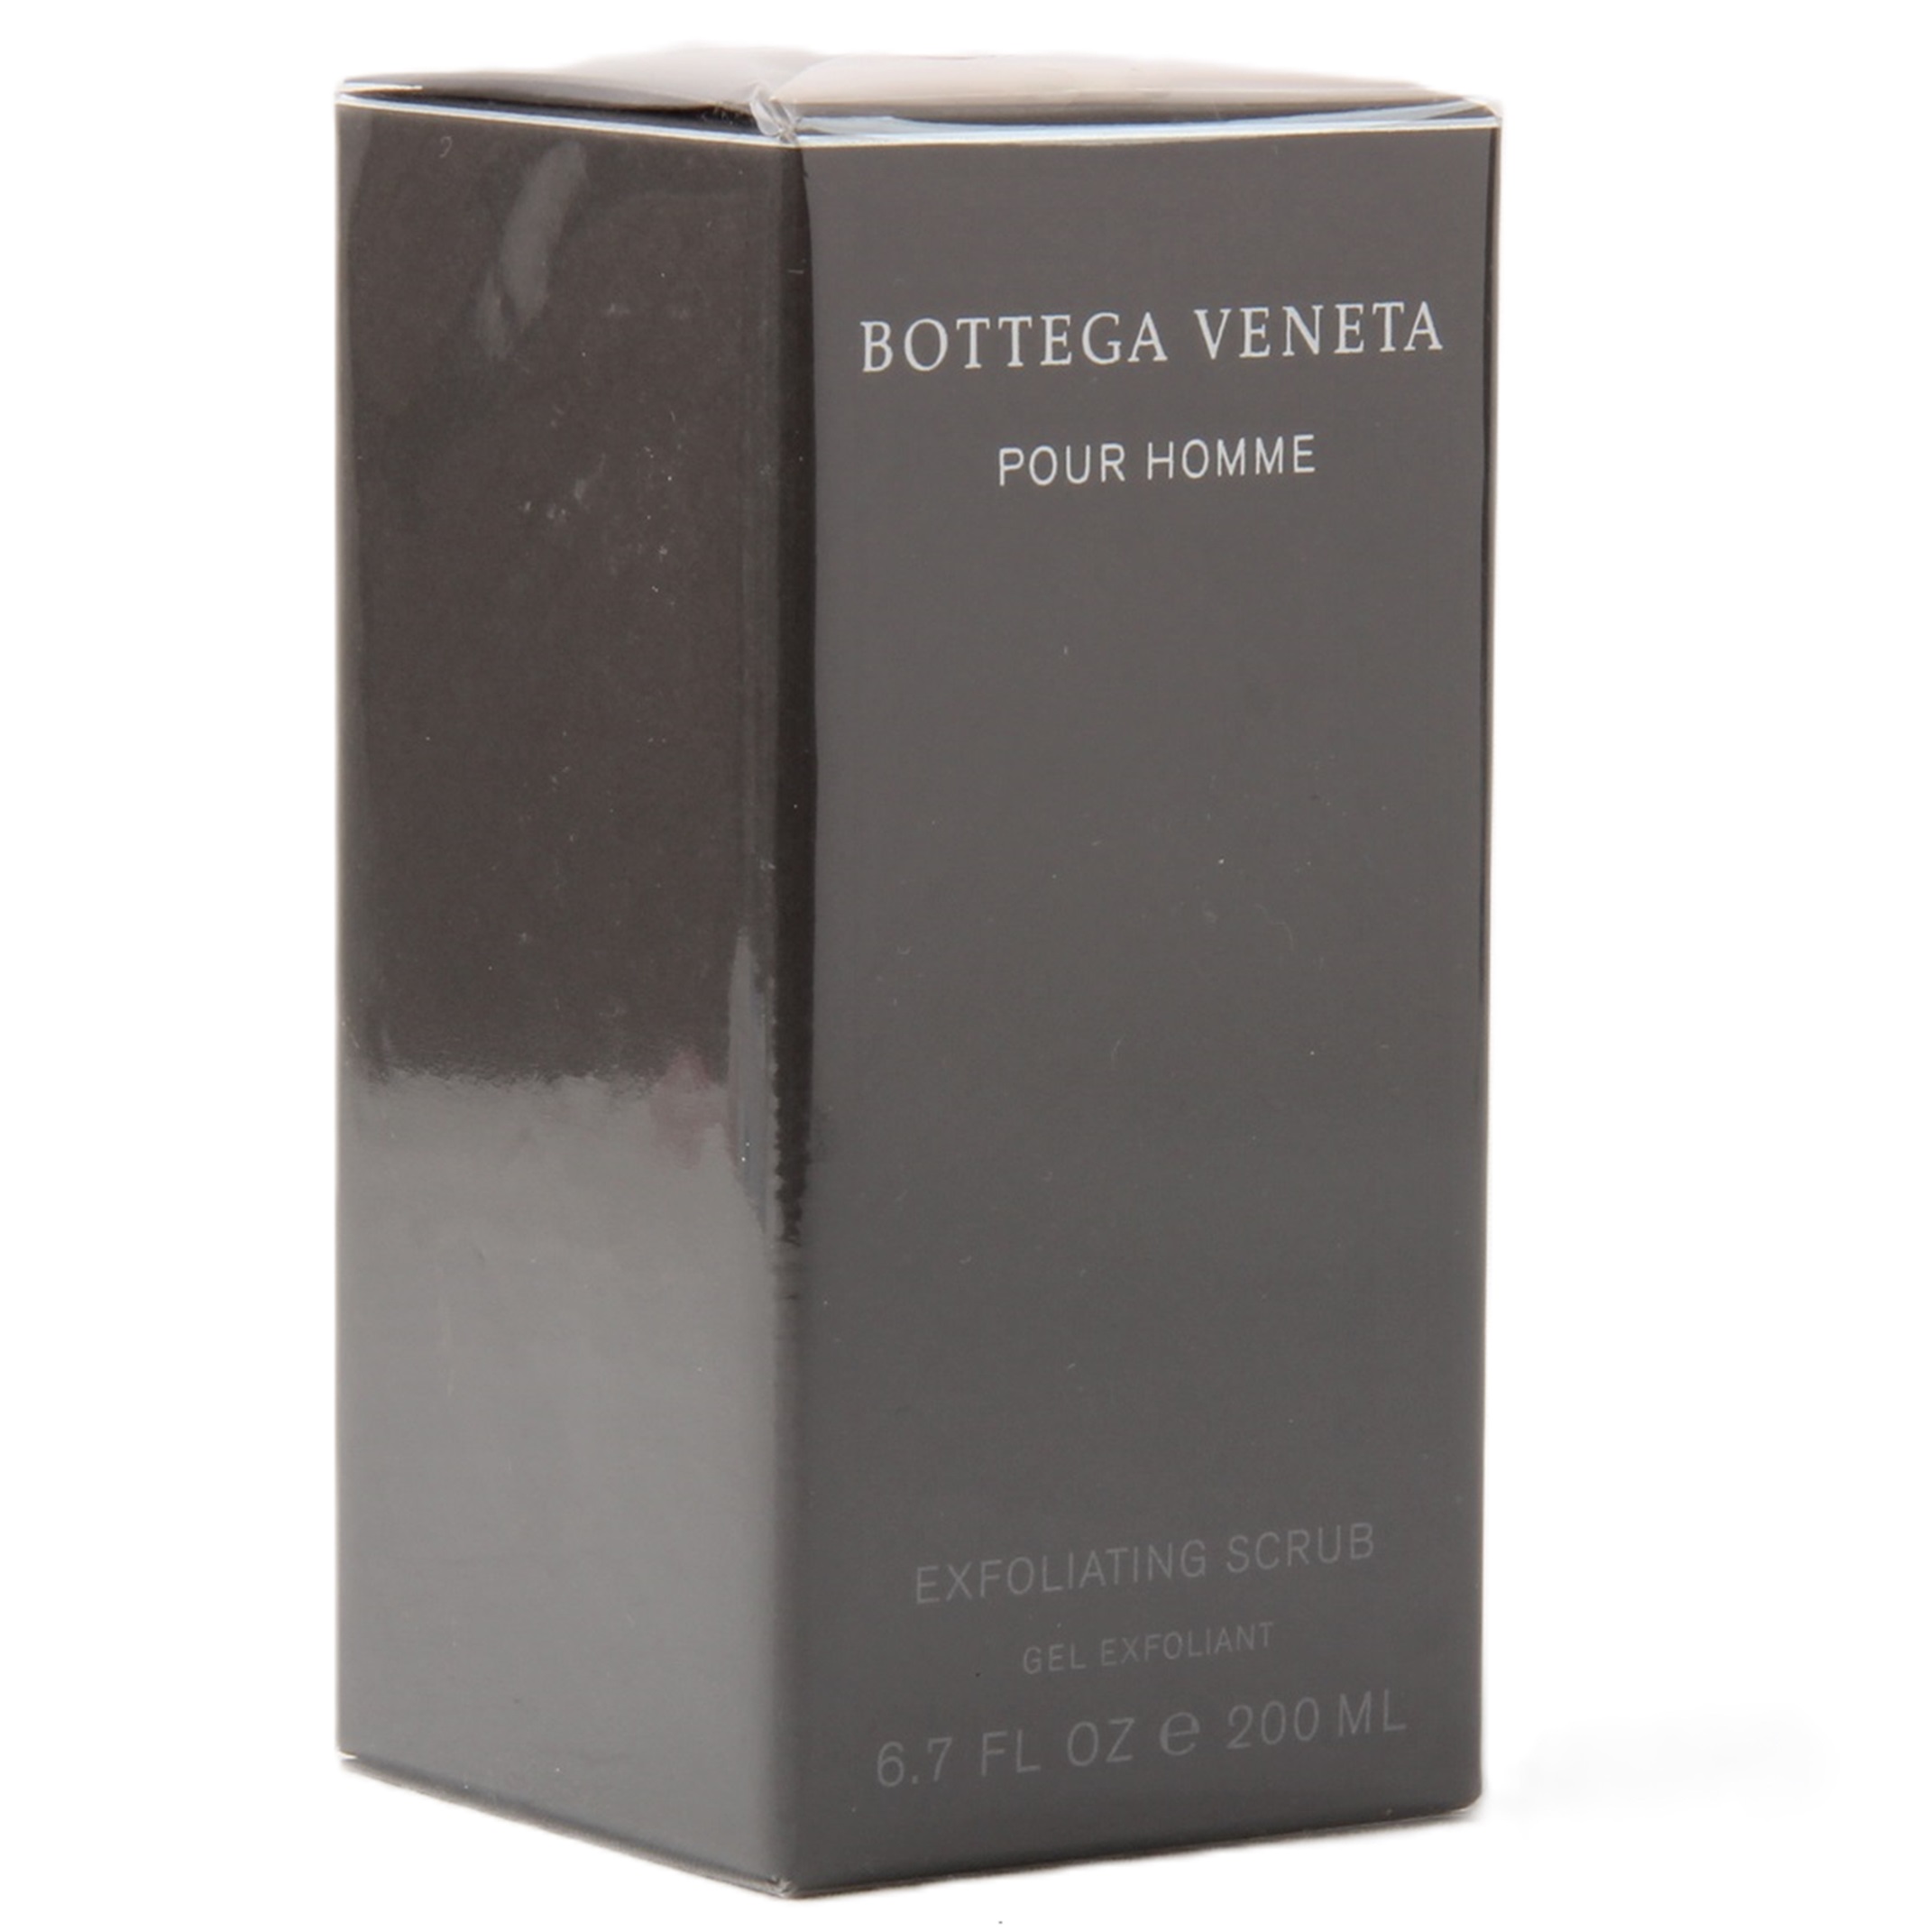 Bottega Veneta Pour Homme Exfoliating Scrub 200ml